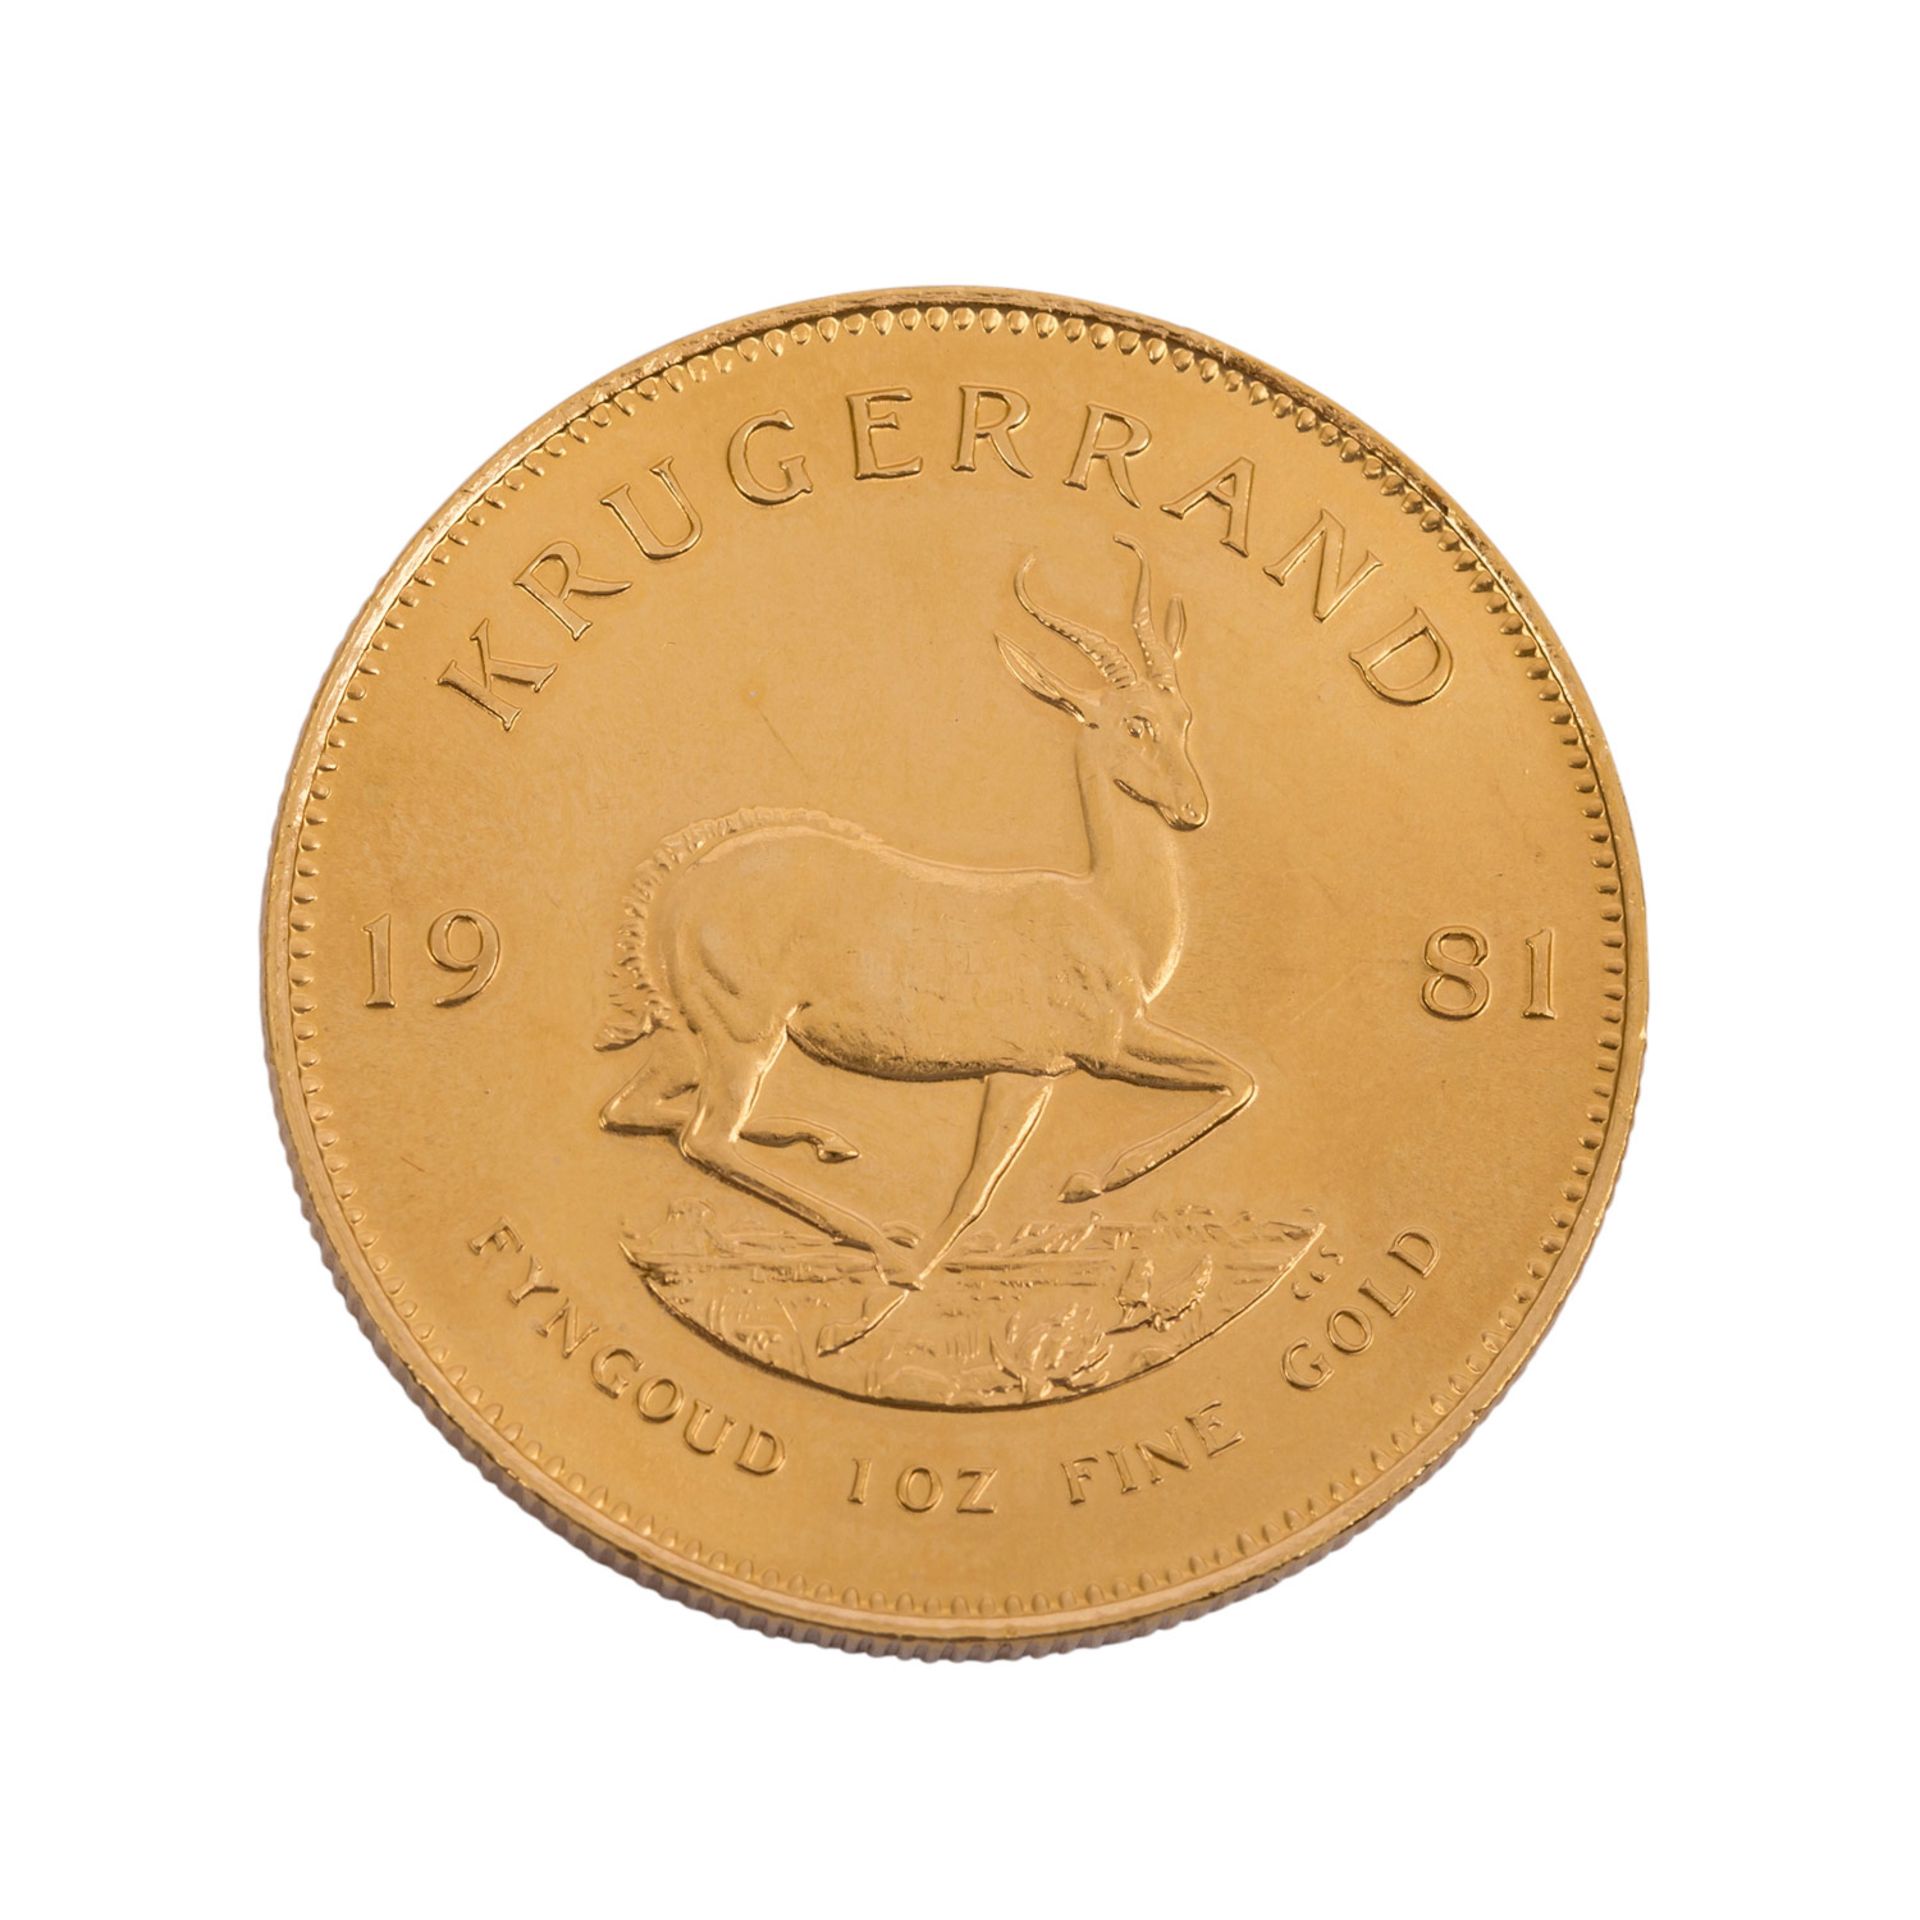 Südafrika/GOLD - 1 oz. Krügerrand,31,1 g fein, ss-vzSouthafrica/GOLD - 1 oz. Krugerrand, 31.1 - Bild 2 aus 2